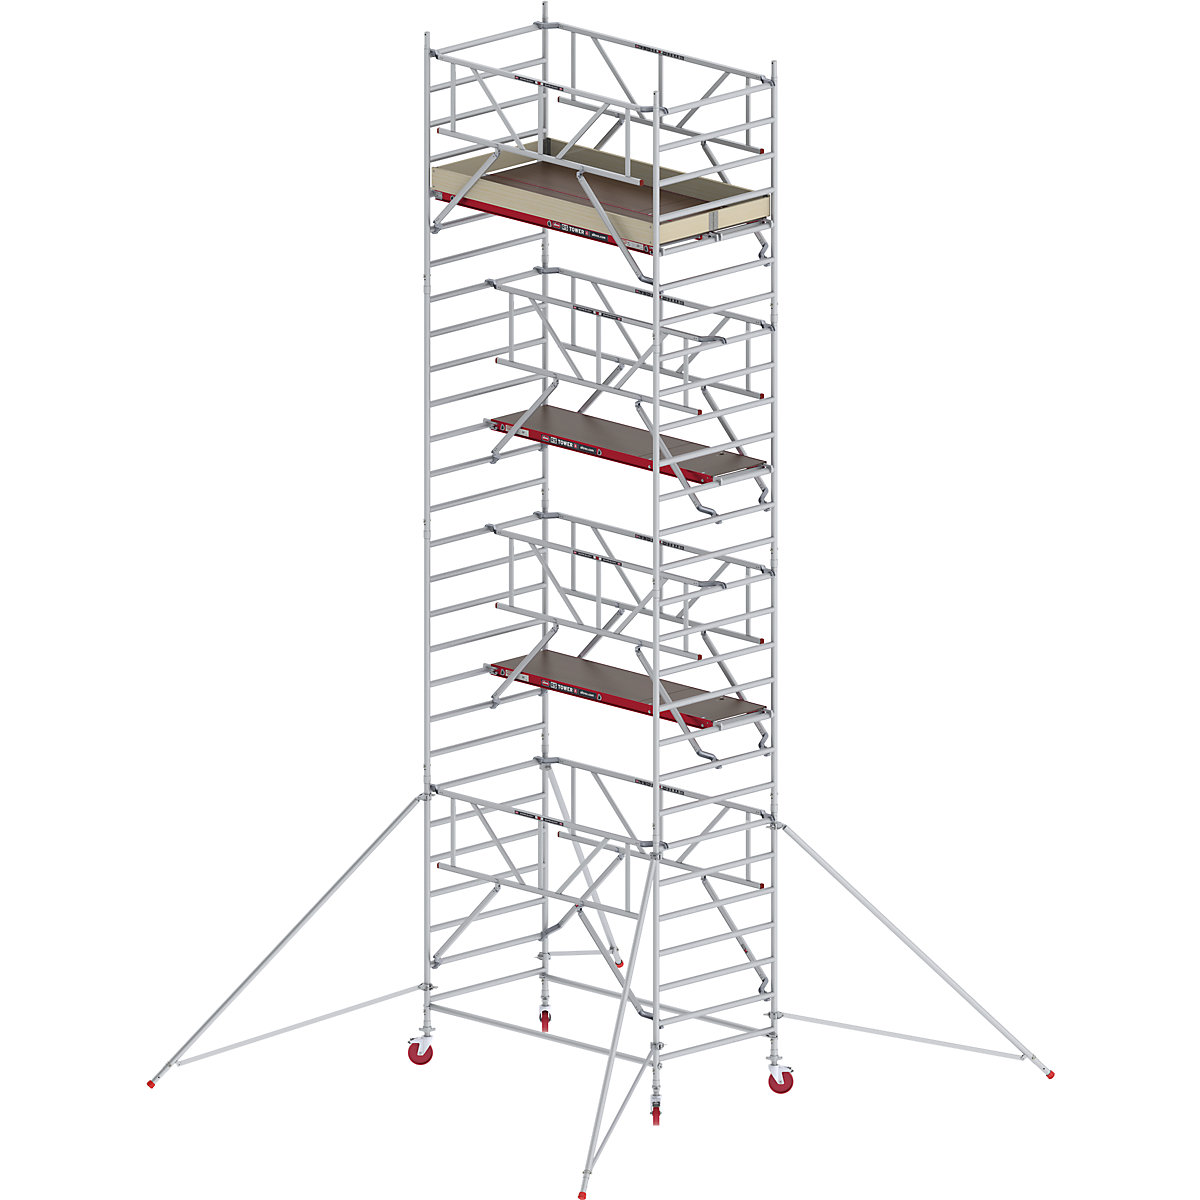 Fahrgerüst RS TOWER 42 breit mit Safe-Quick® Altrex, Holzplattform, Länge 2,45 m, Arbeitshöhe 9,20 m